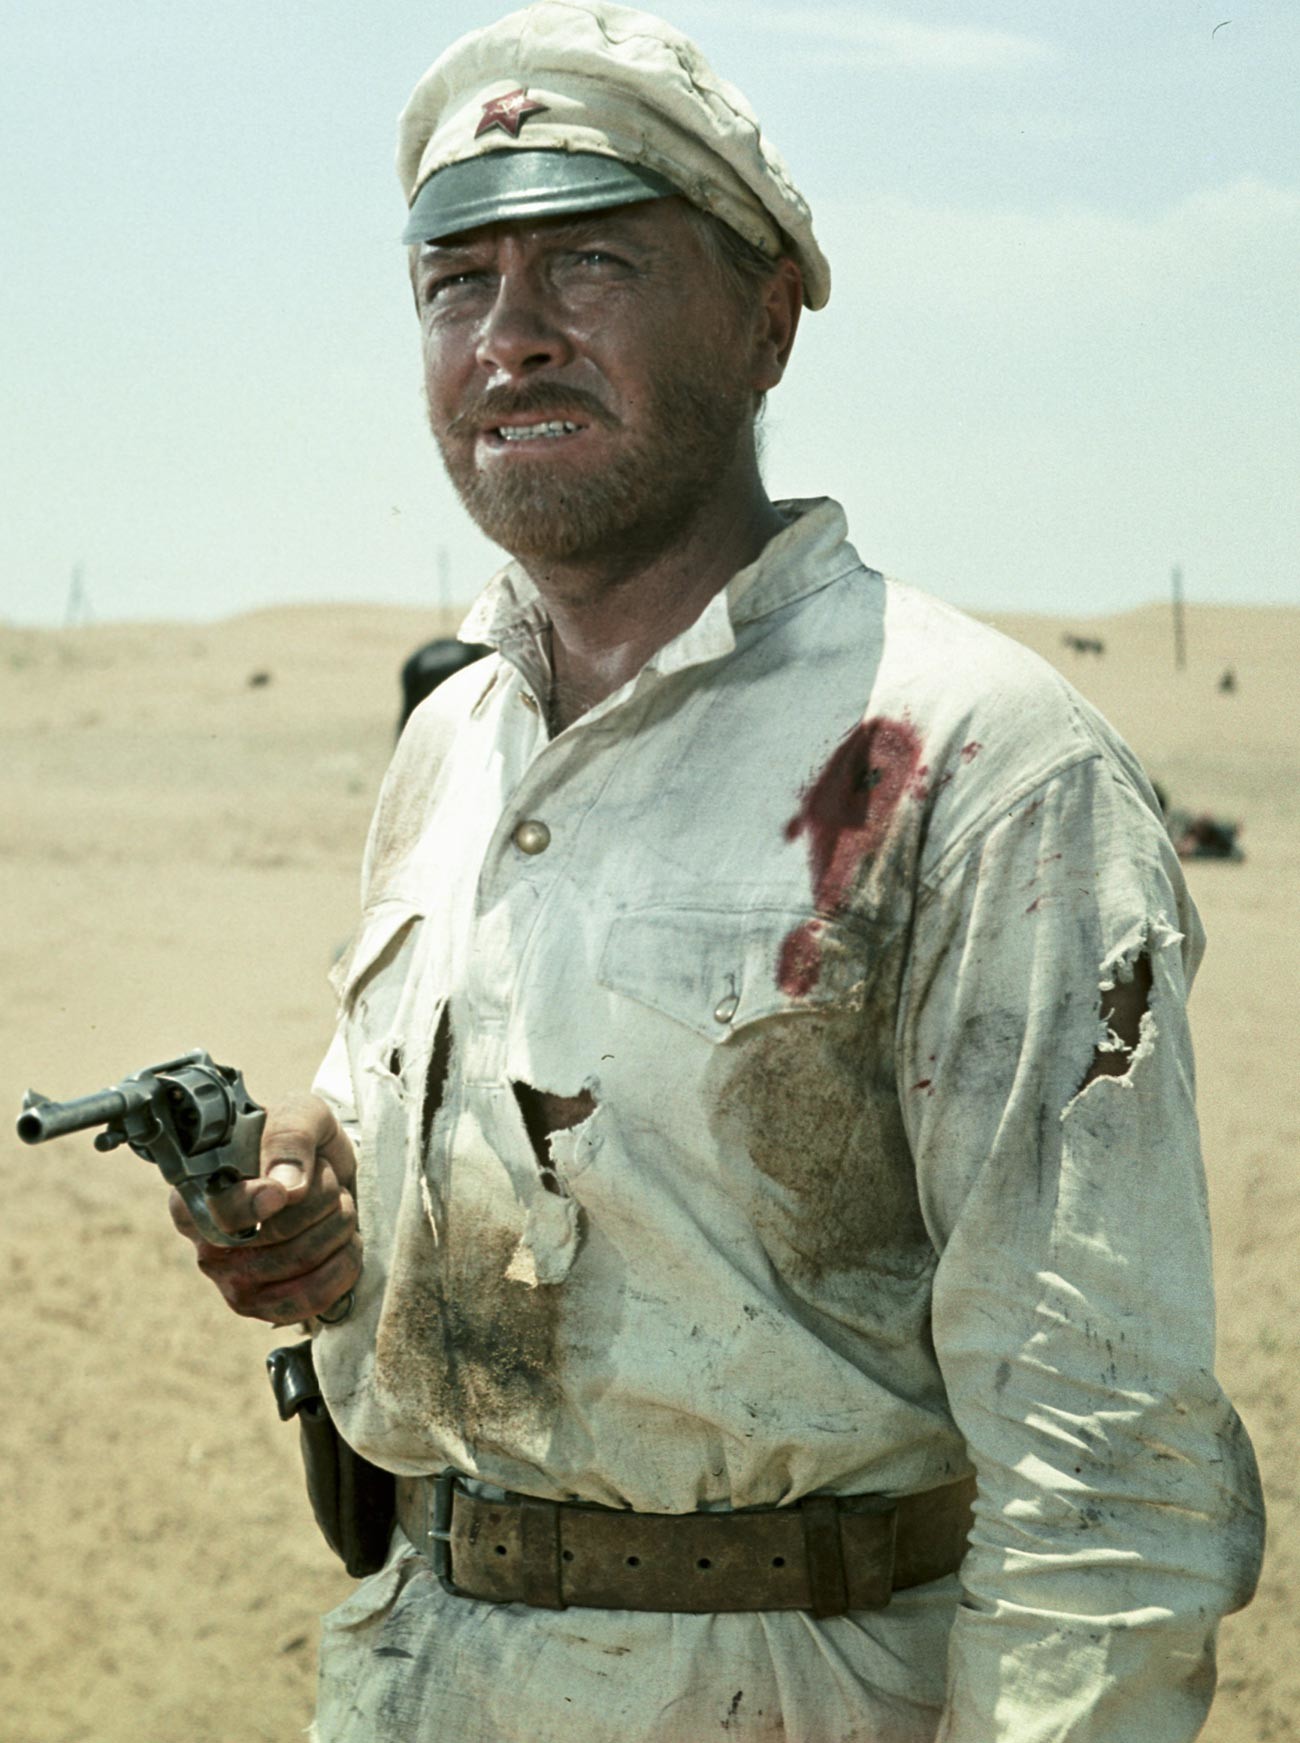 Актерот Анатолиј Кузнецов во улогата на Сухов во филмот „Белото сонце на пустината“ (режисер Владимир Мотиљ).

